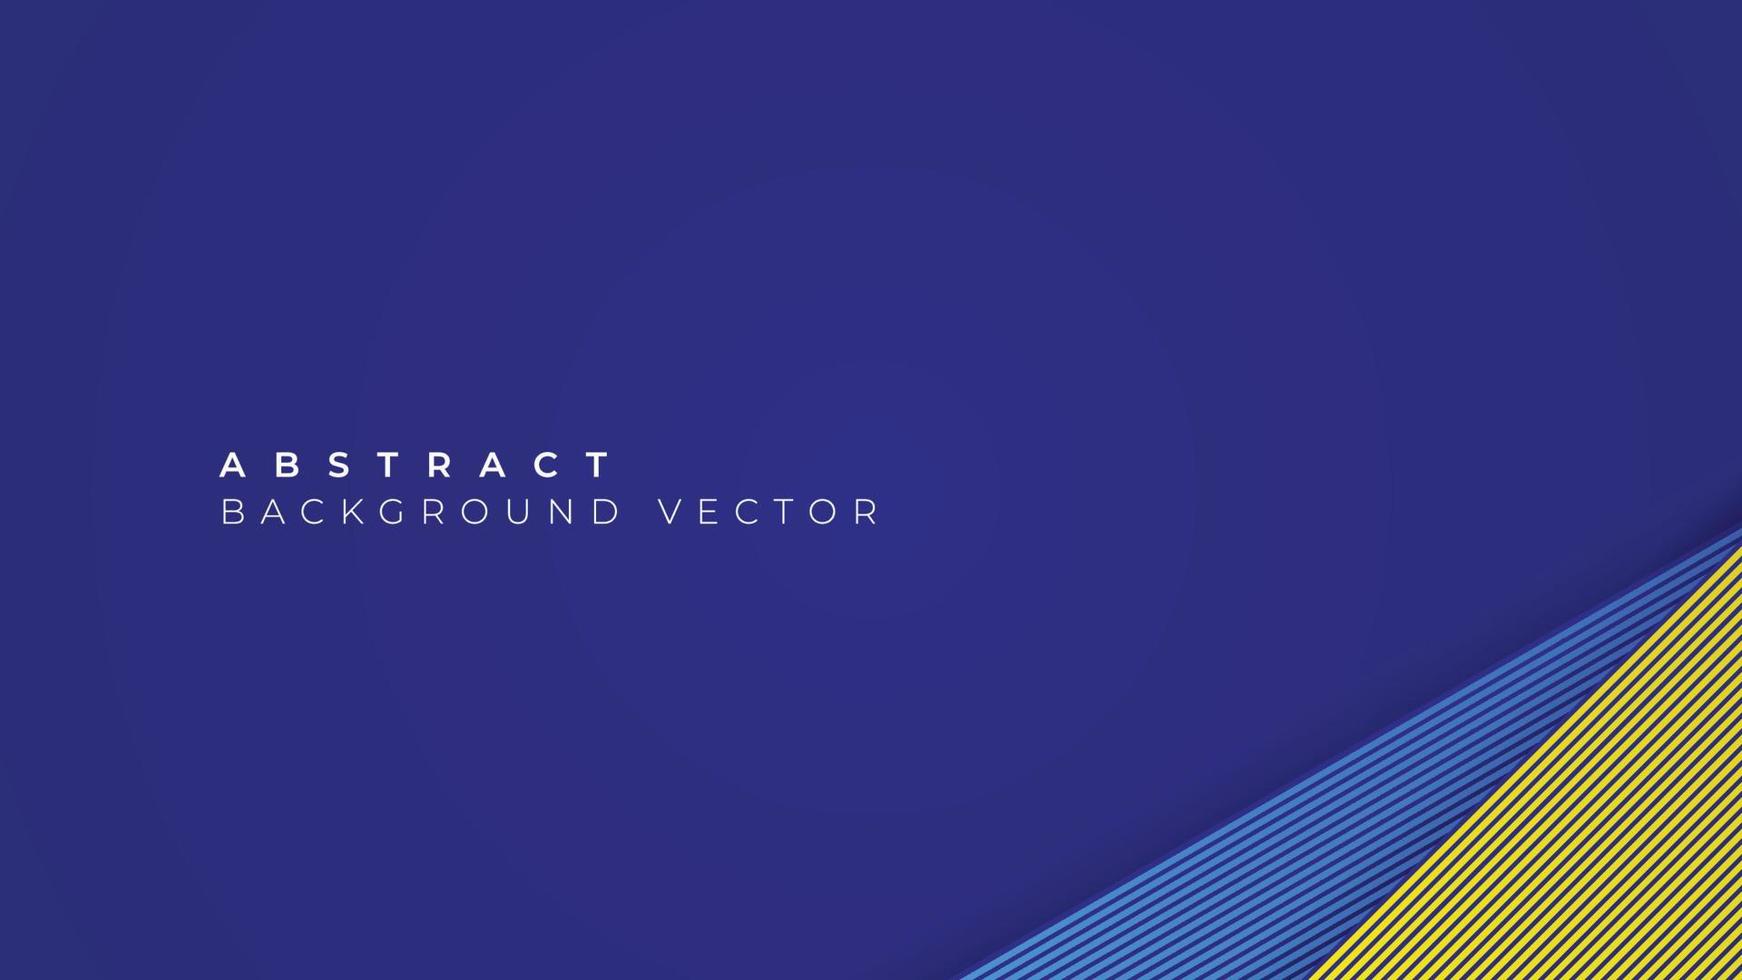 moderner abstrakter Hintergrund mit blauen und gelben Streifen. geometrische Umrisse für Poster, Flyer, Websites, Cover, Banner, Werbung. Vektor-Illustration vektor